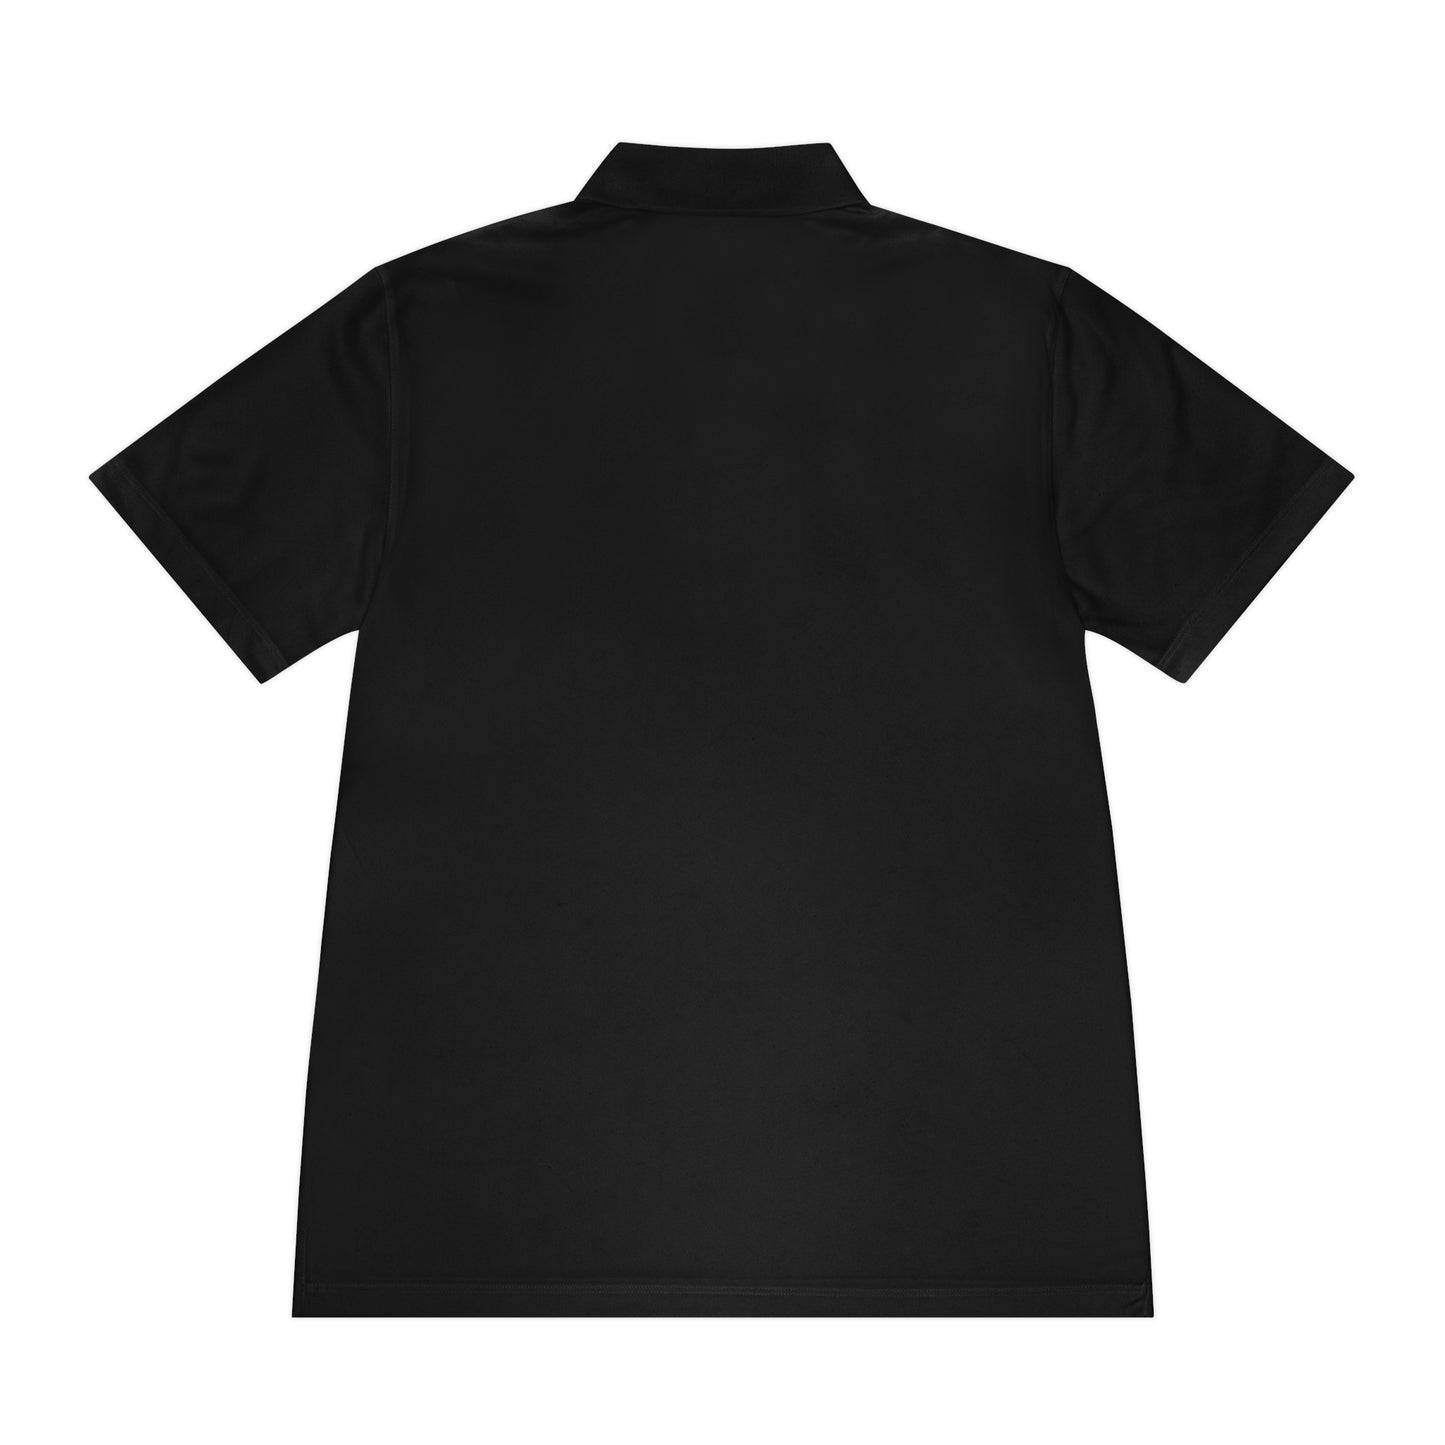 S2- Draft 2 - 102D SSB Polo Shirt - Back is Blank